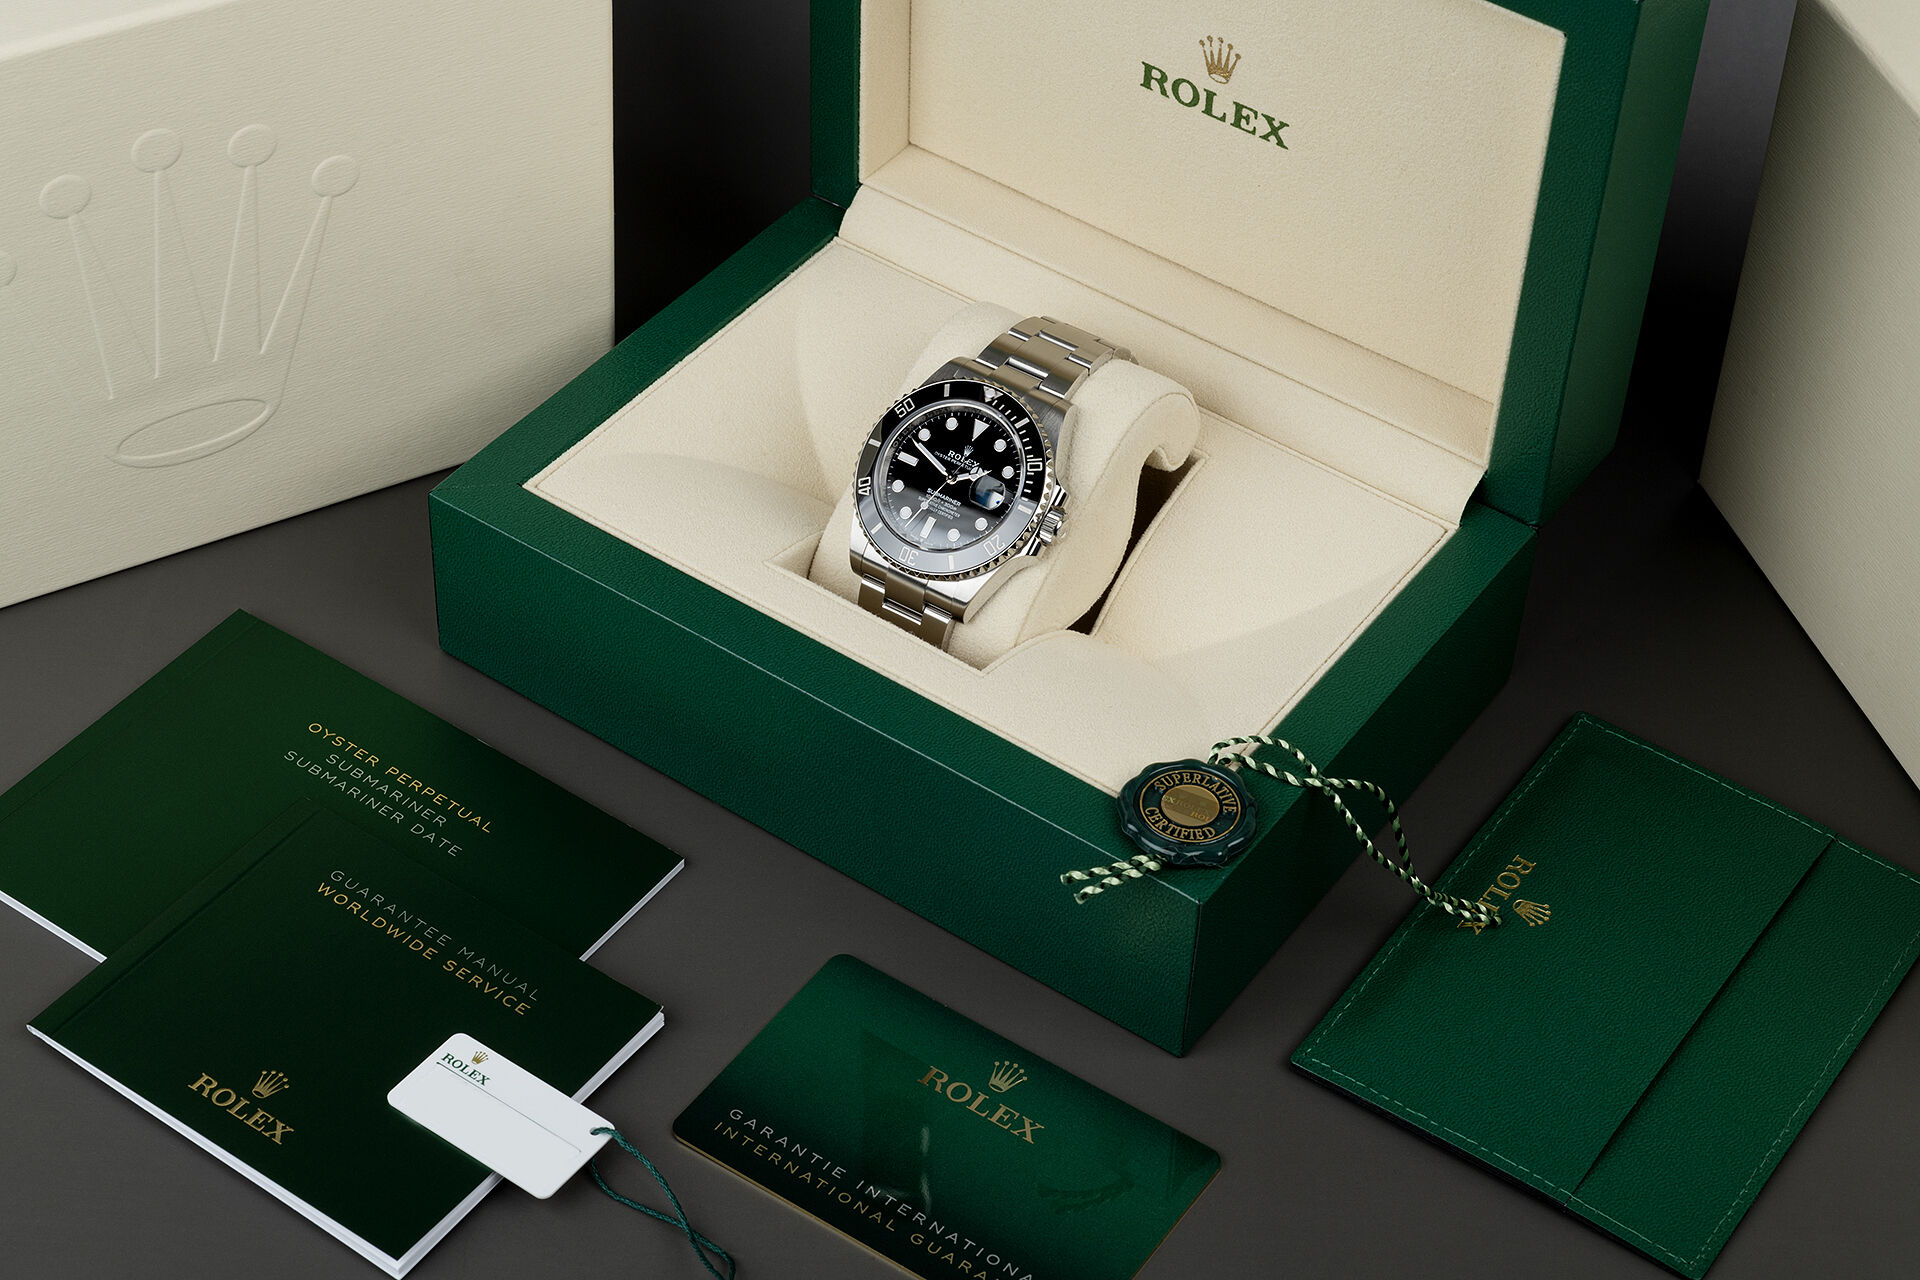 ref 126610LN | Brand New | Rolex Submariner Date